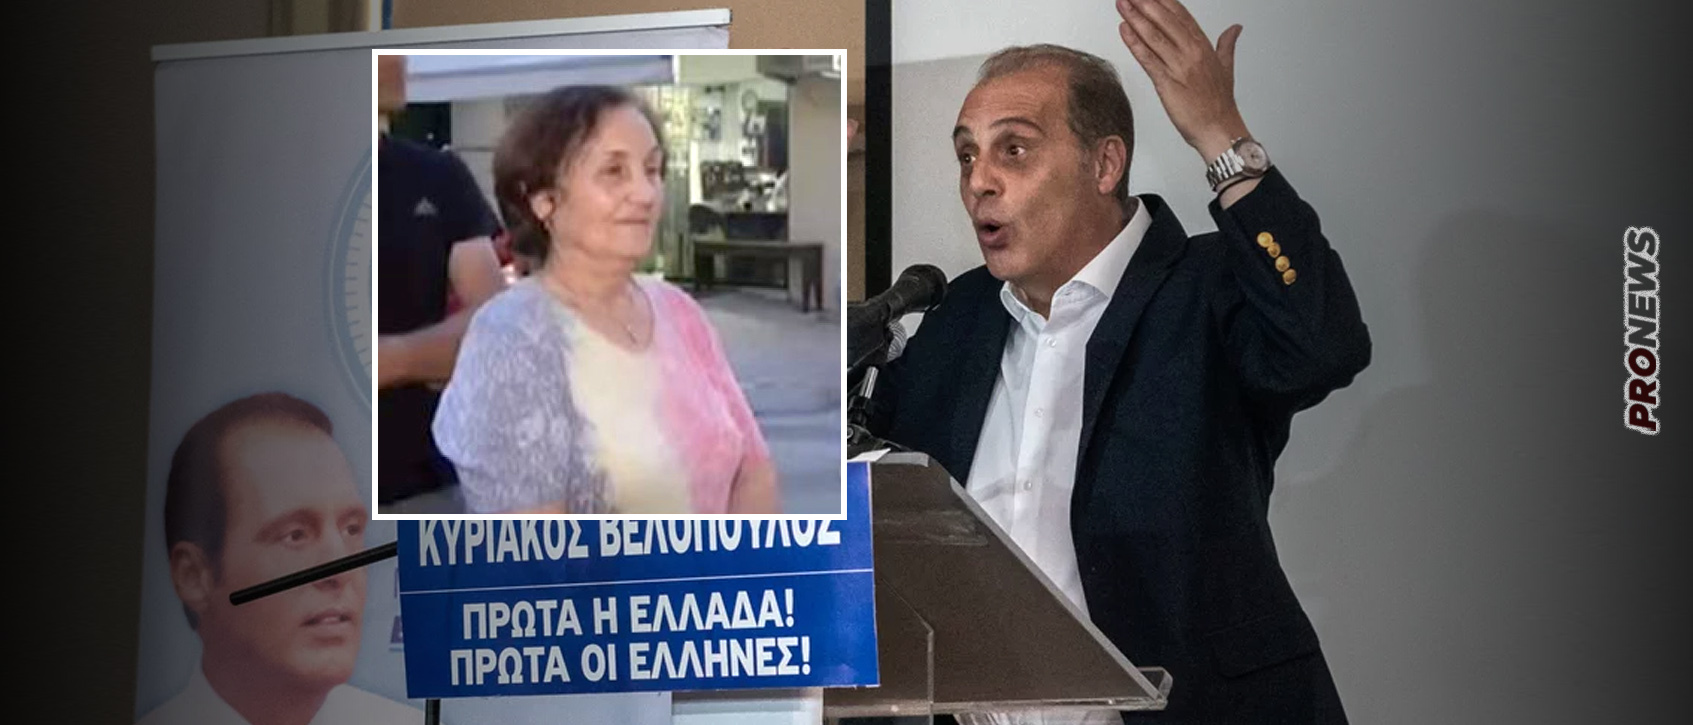 Ελληνική Λύση: Μια γιαγιά που βοηθά στο κρεοπωλείο εκπροσωπεί την Ελλάδα στο Ευρωκοινοβούλιο «δια χειρός Βελόπουλου»!